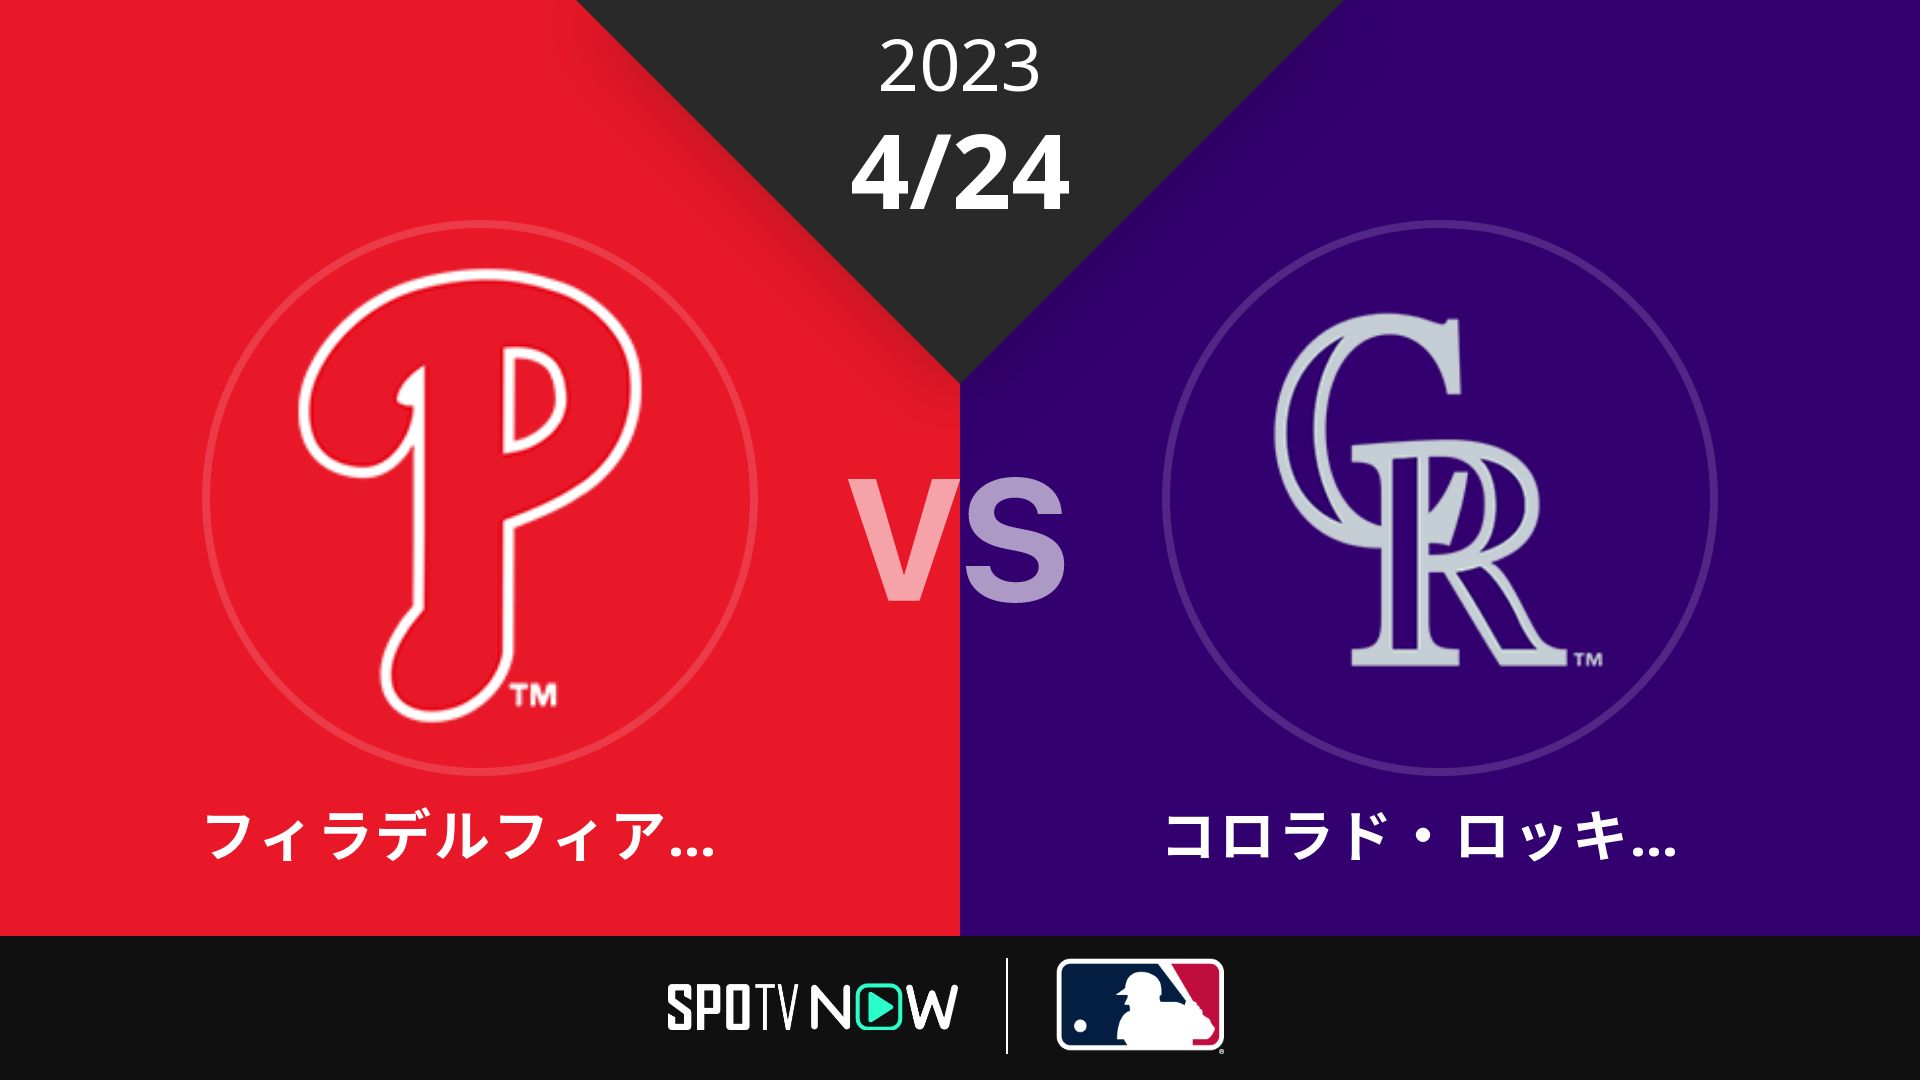 2023/4/24 フィリーズ vs ロッキーズ [MLB]